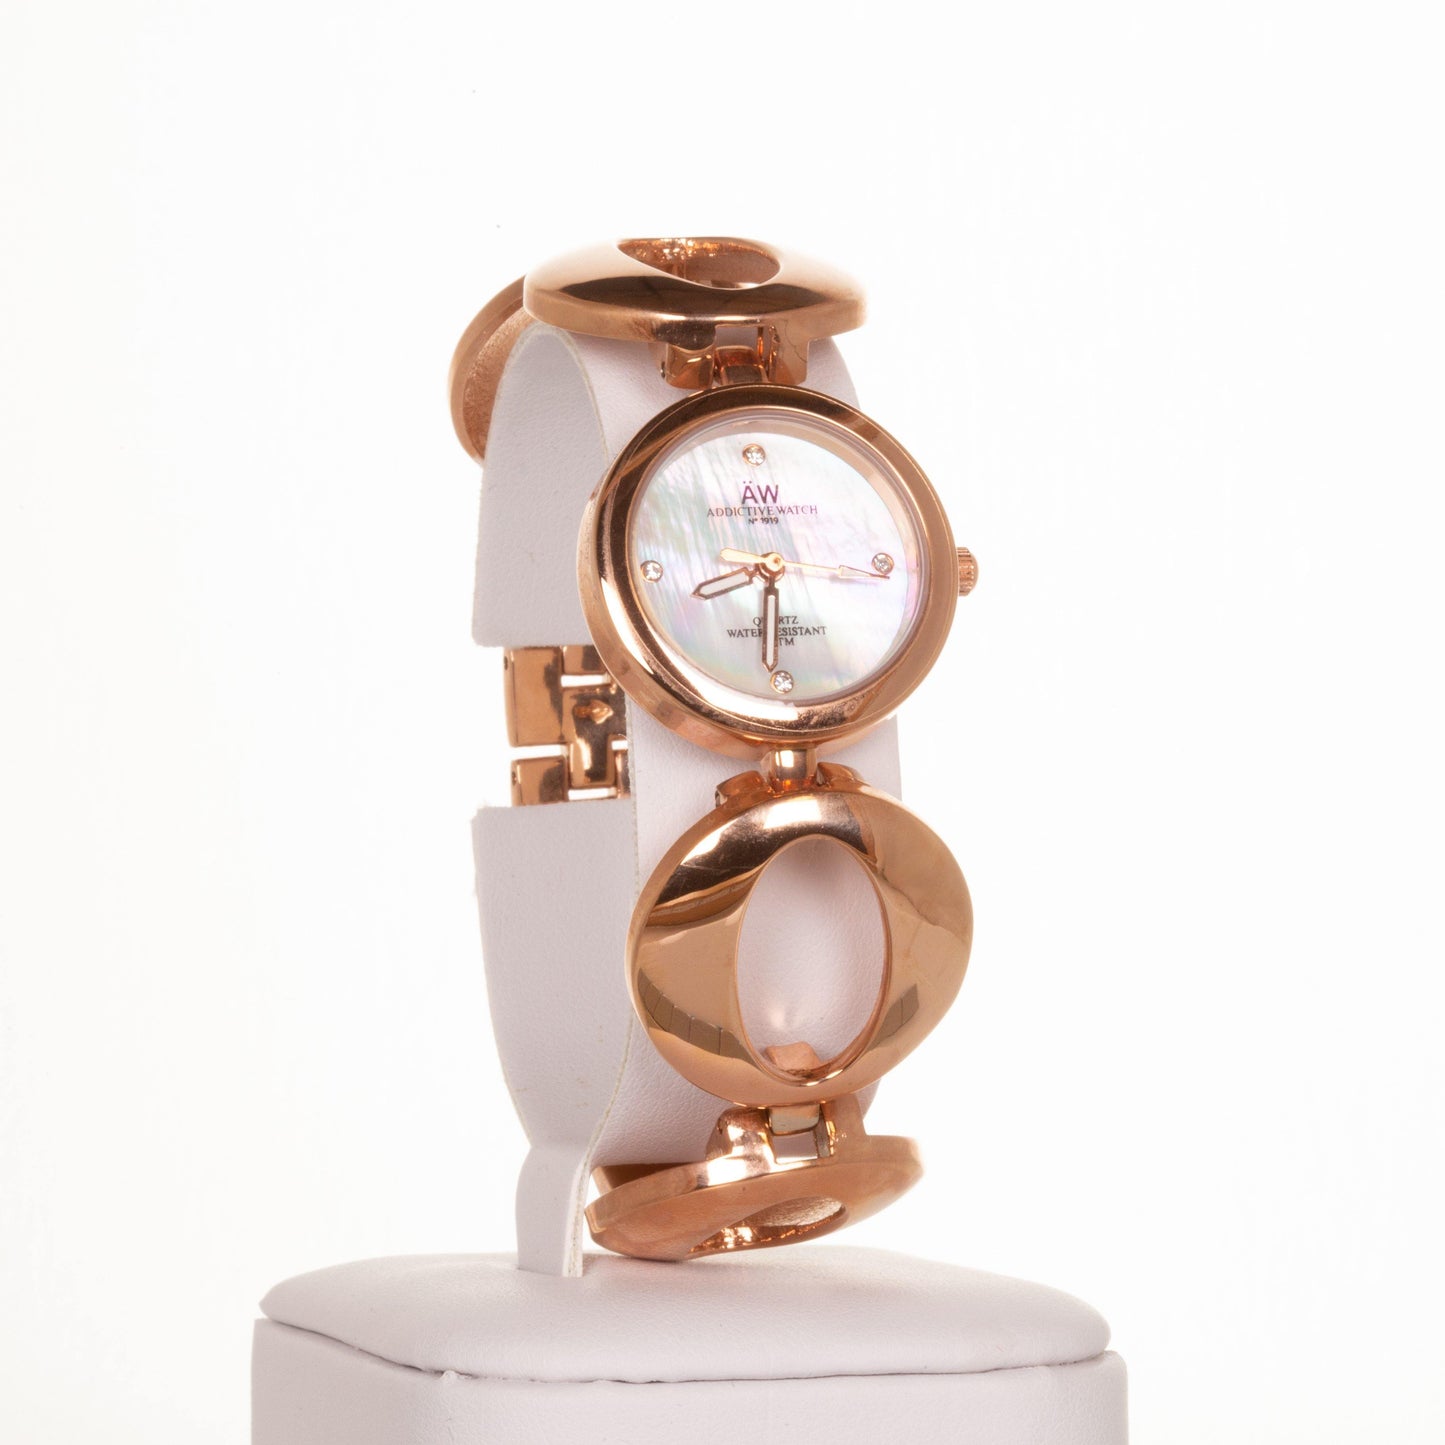 AW dámske hodinky vo farbe ružového zlata s remienkom so symbolom nekonečna a 4 kryštálmi kremeňa - KlenotTV.sk